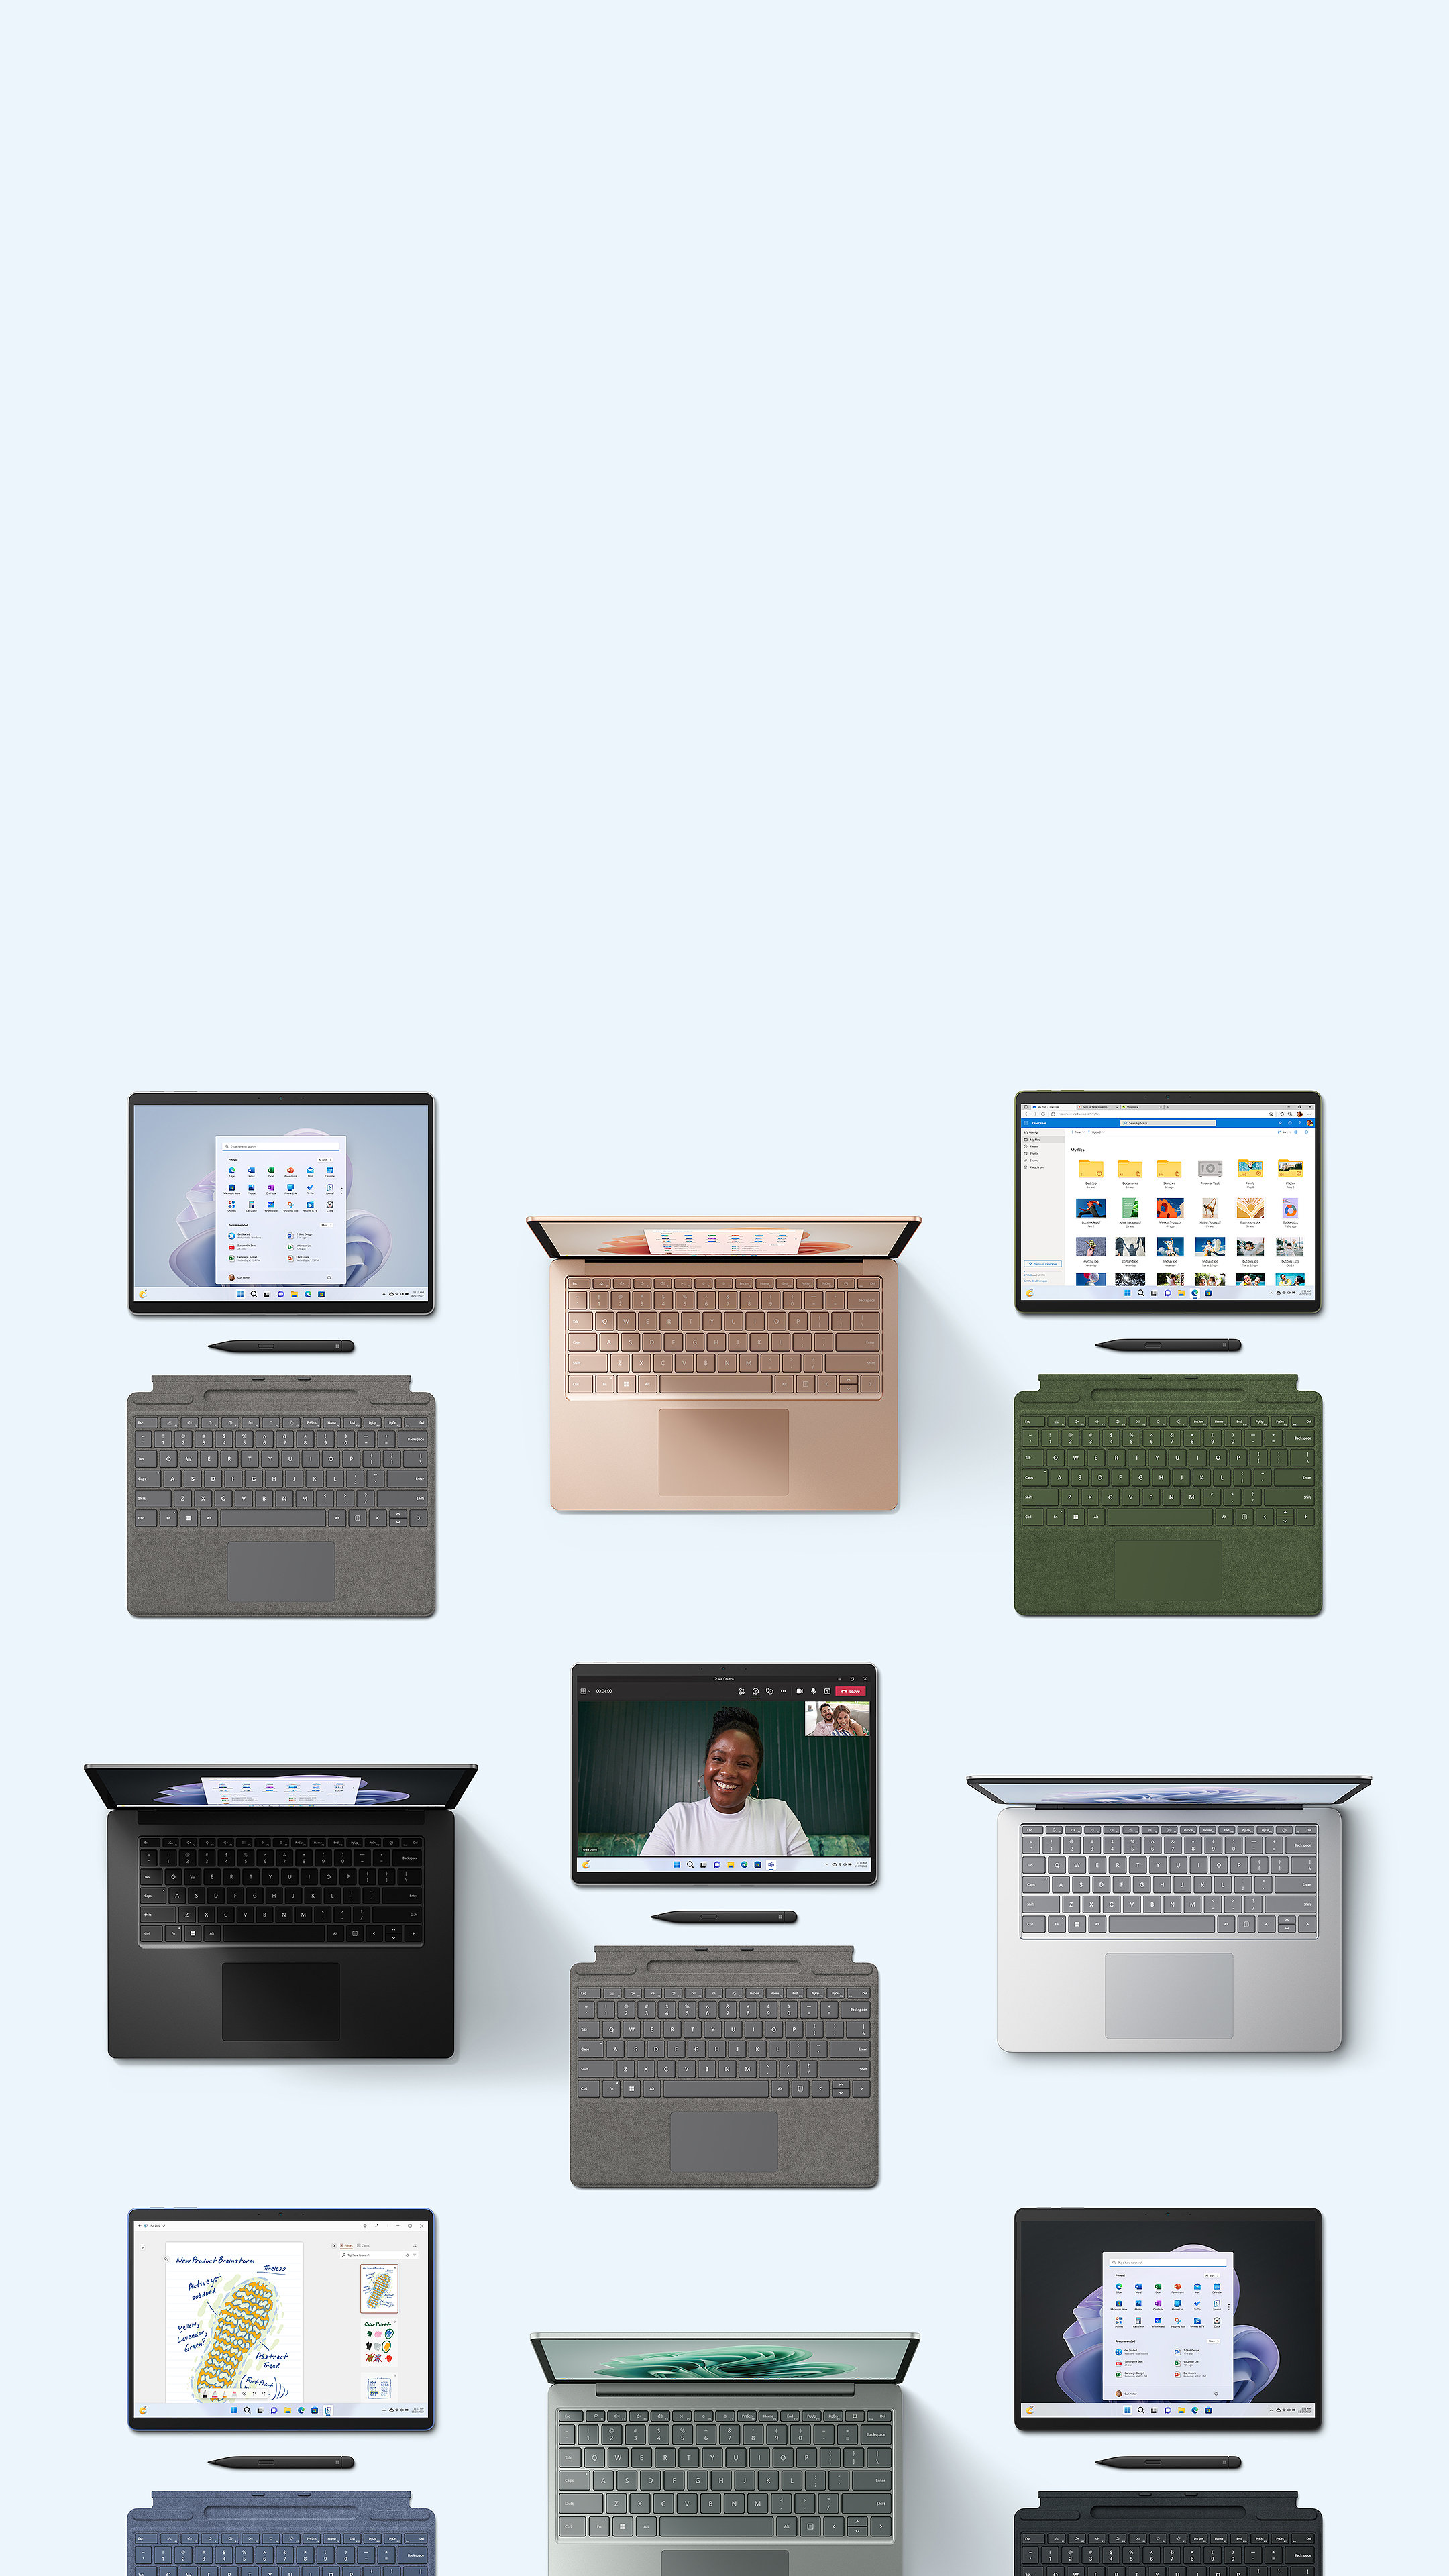 Sammlung von Geräten der Surface-Produktfamilie